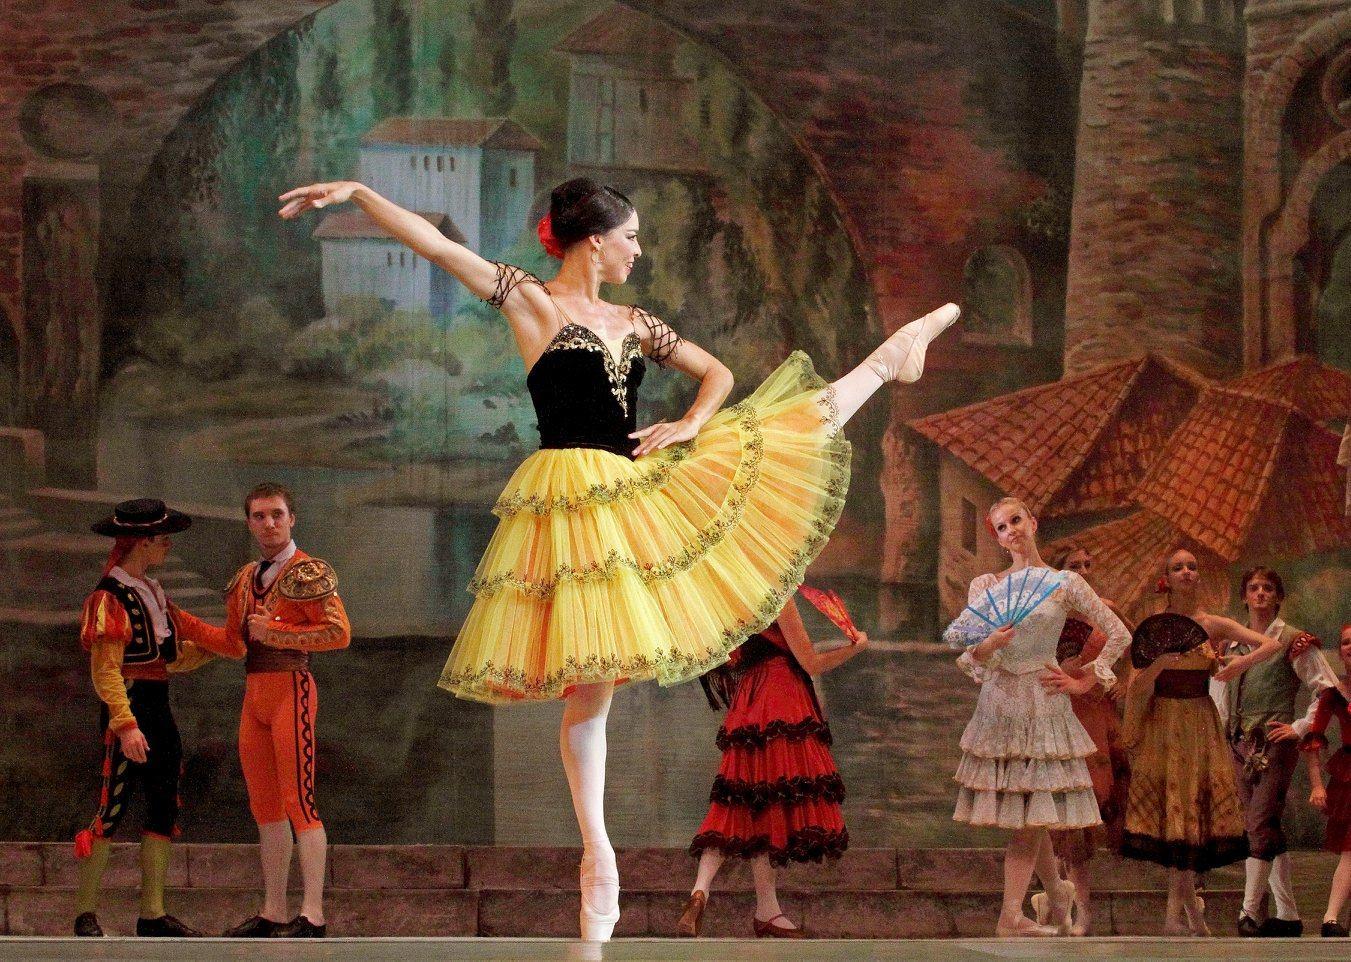 Le Ballet Russe Histoire Caractéristiques Top 5 4844